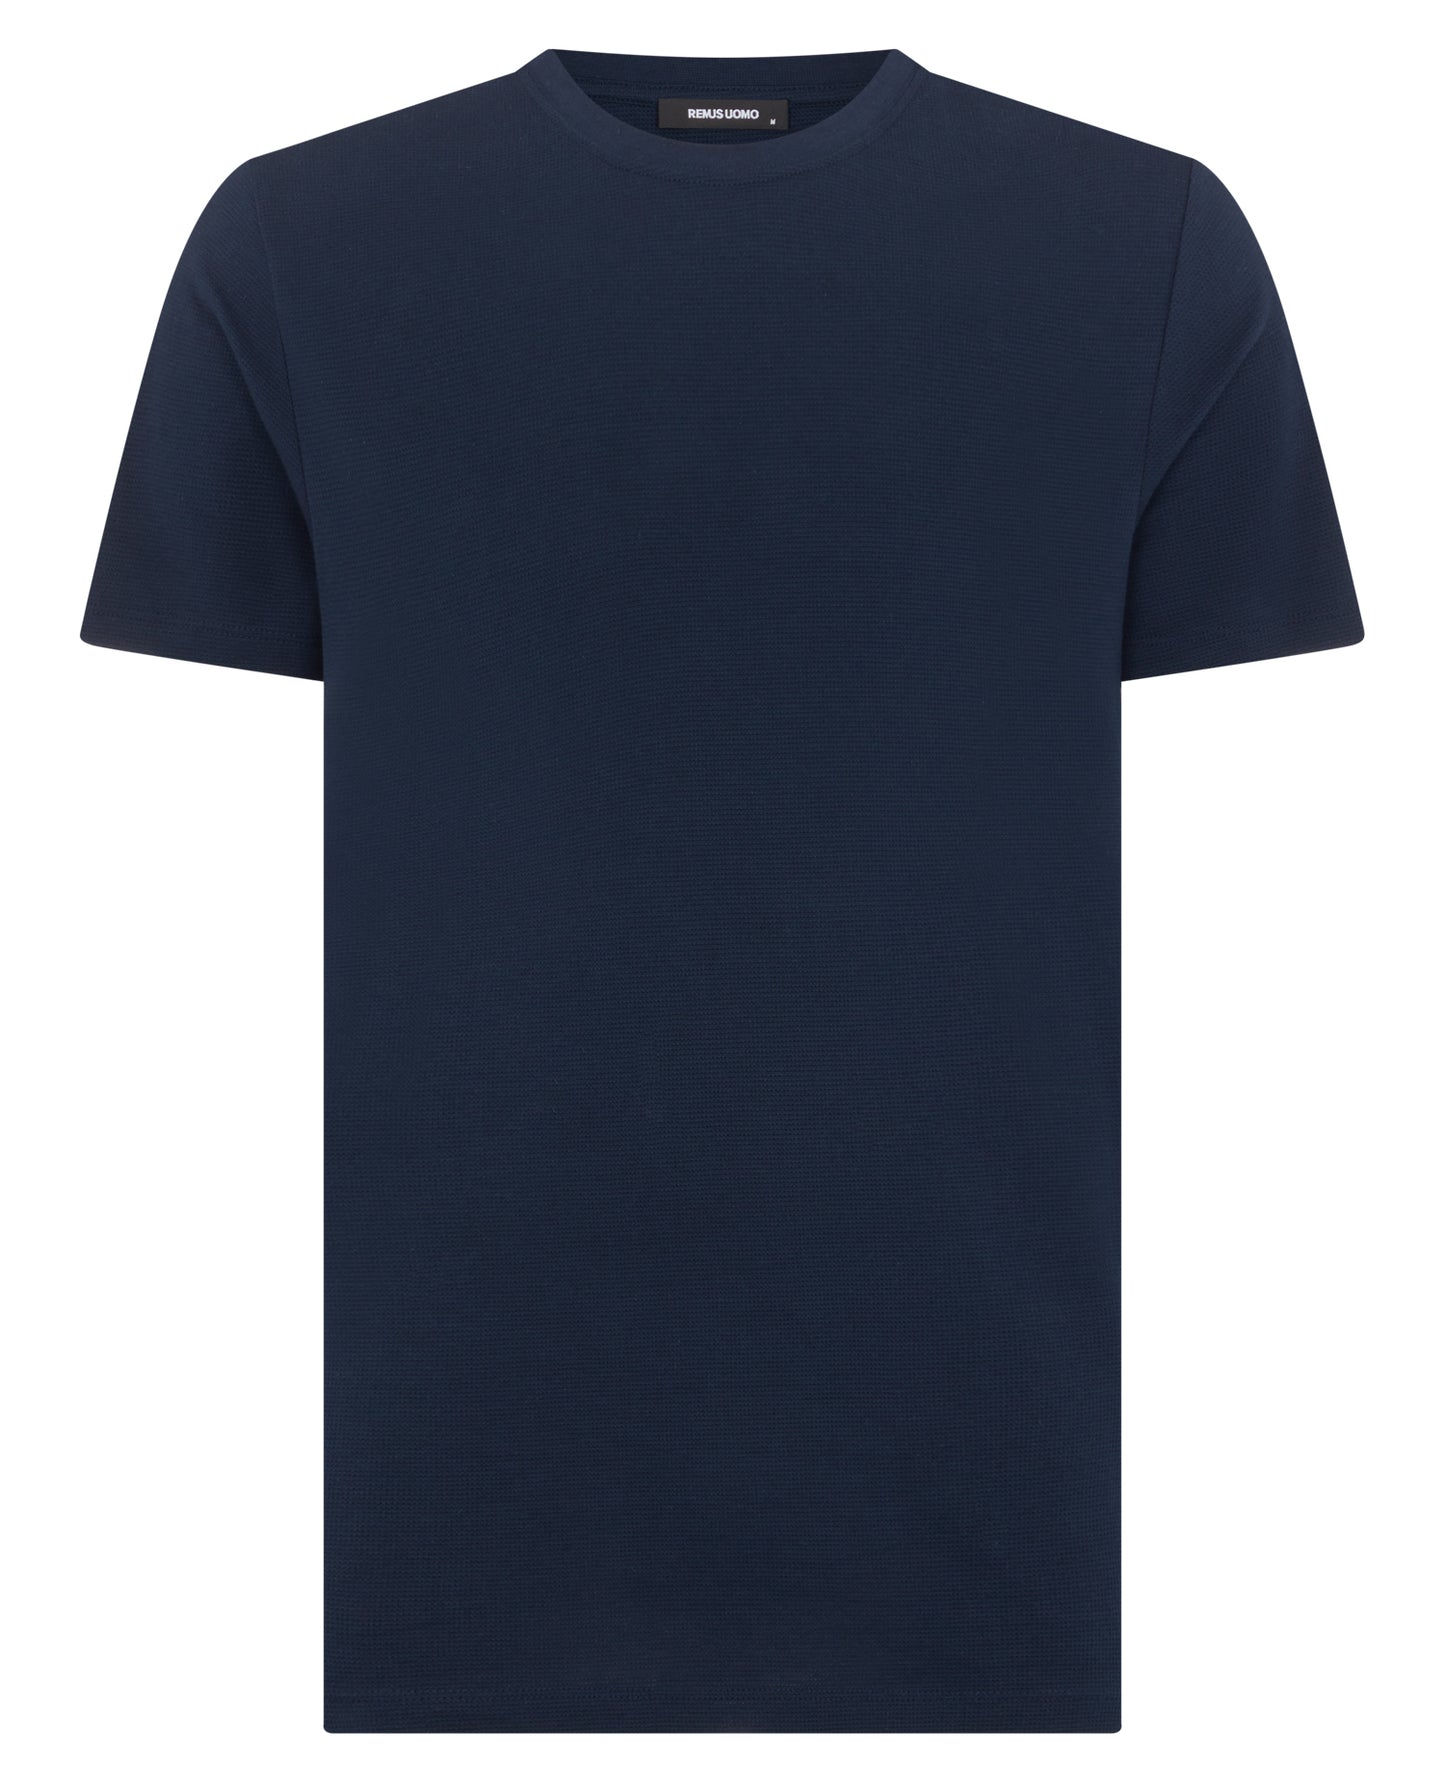 Remus Uomo T Shirt - Navy